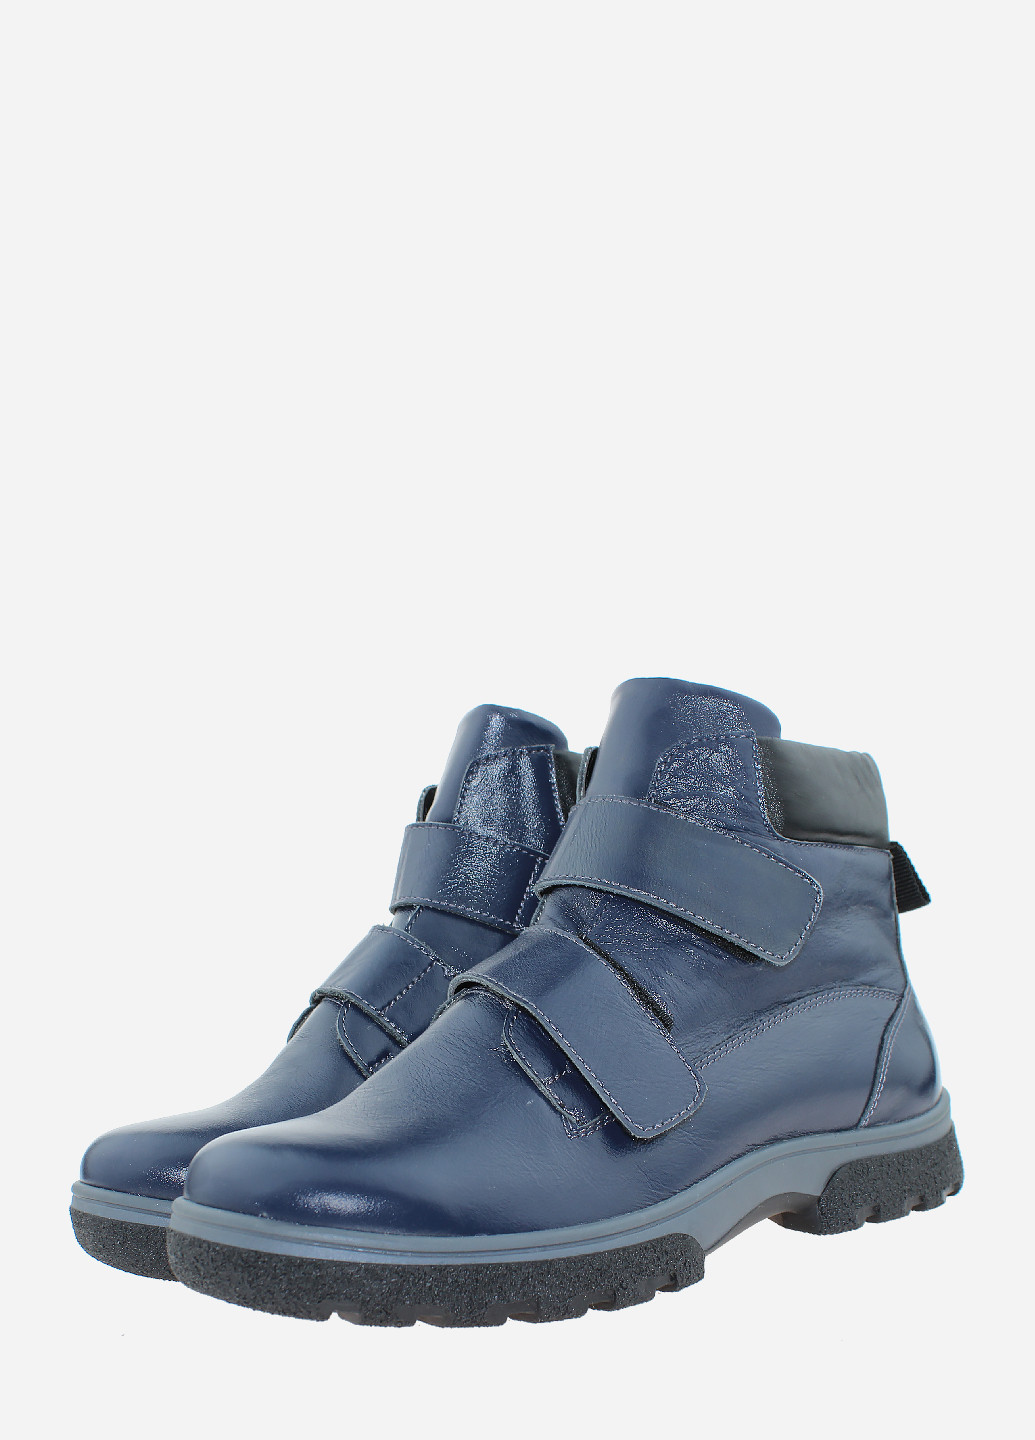 Зимние ботинки l.carvari r2007 синий L`CARVARI